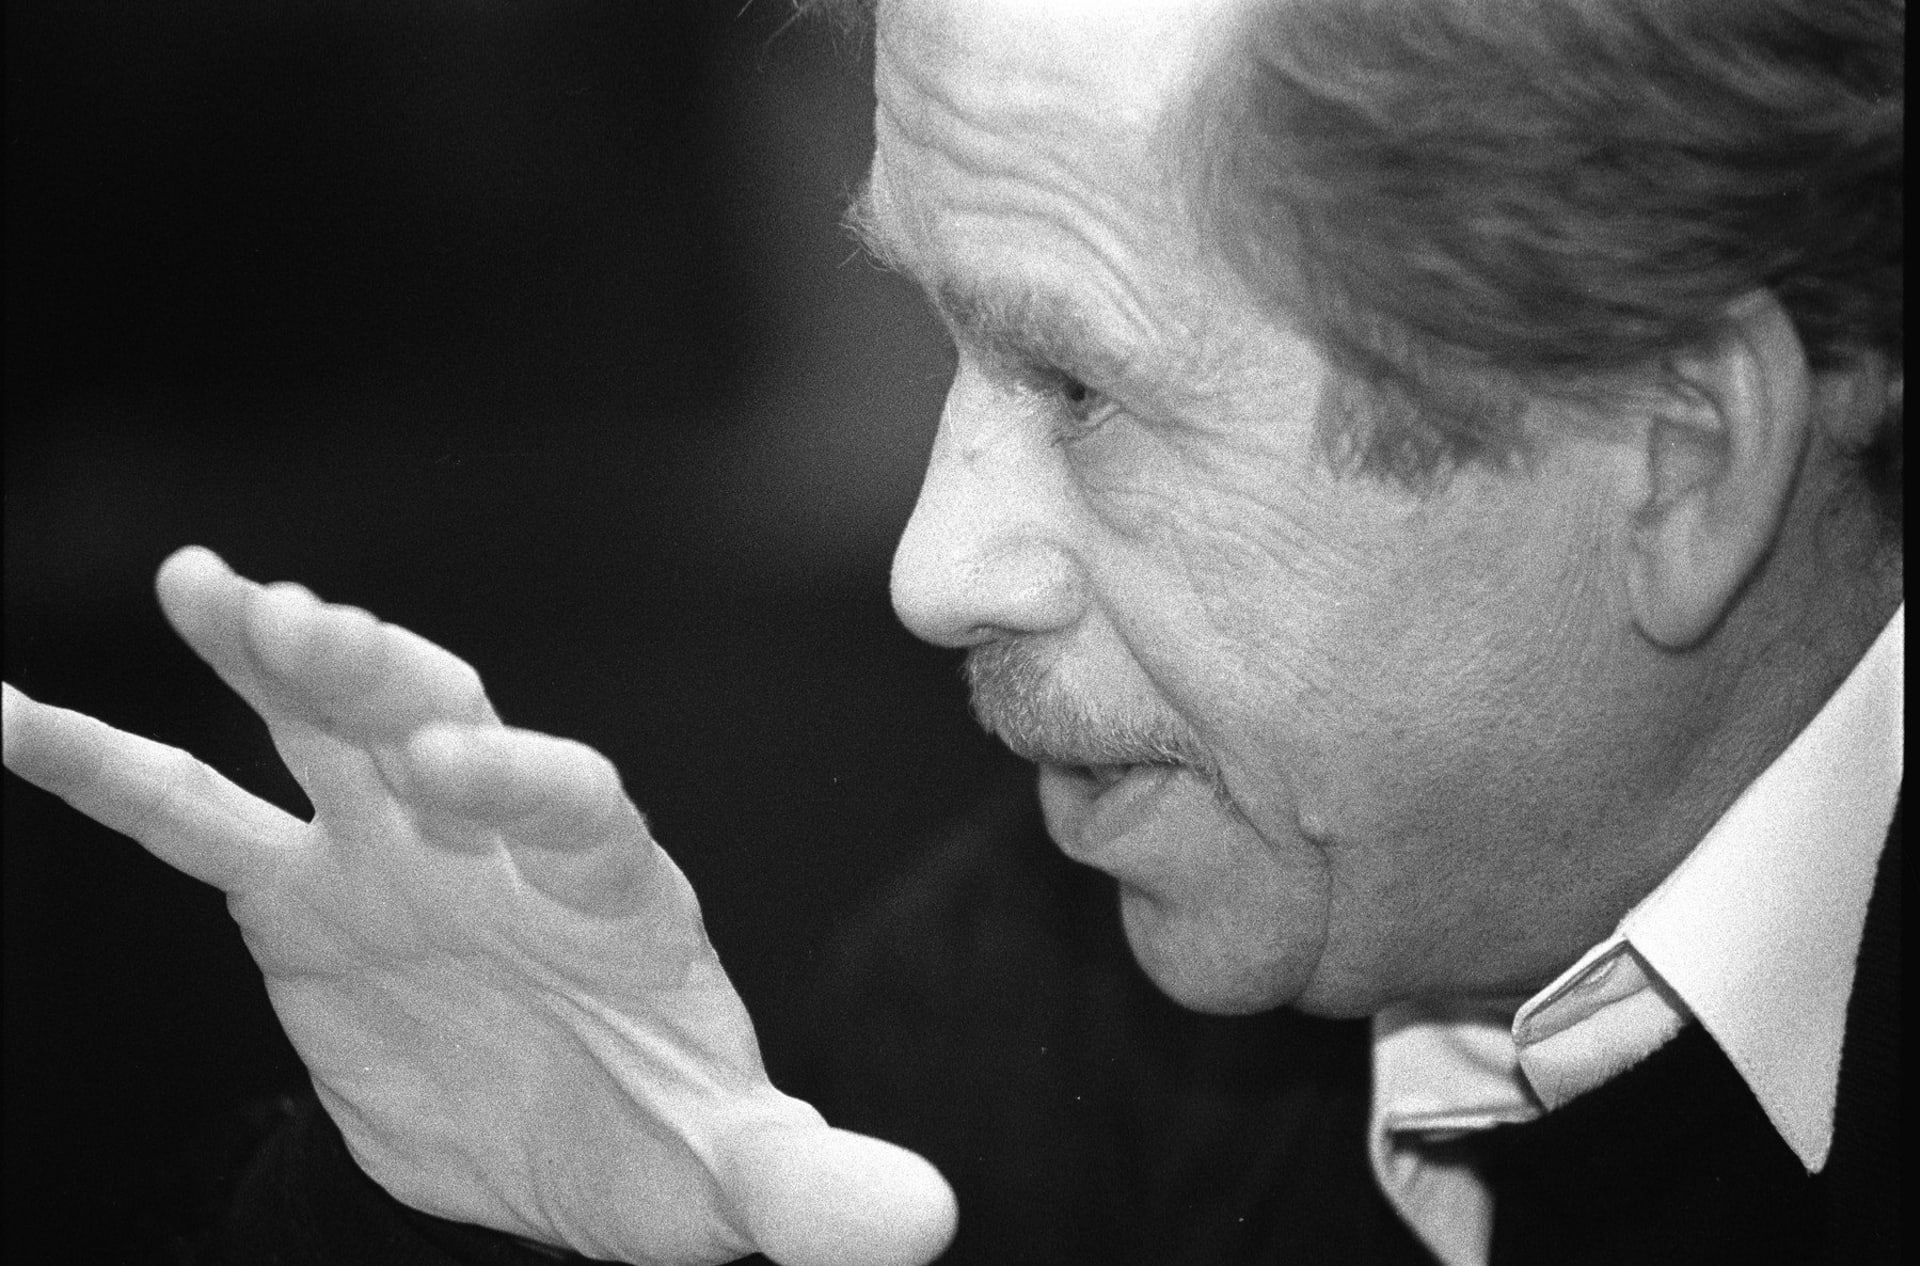 Na konci prosince 1989 byl zvolen Václav Havel jako první nekomunistický prezident Československa po více než padesáti letech.